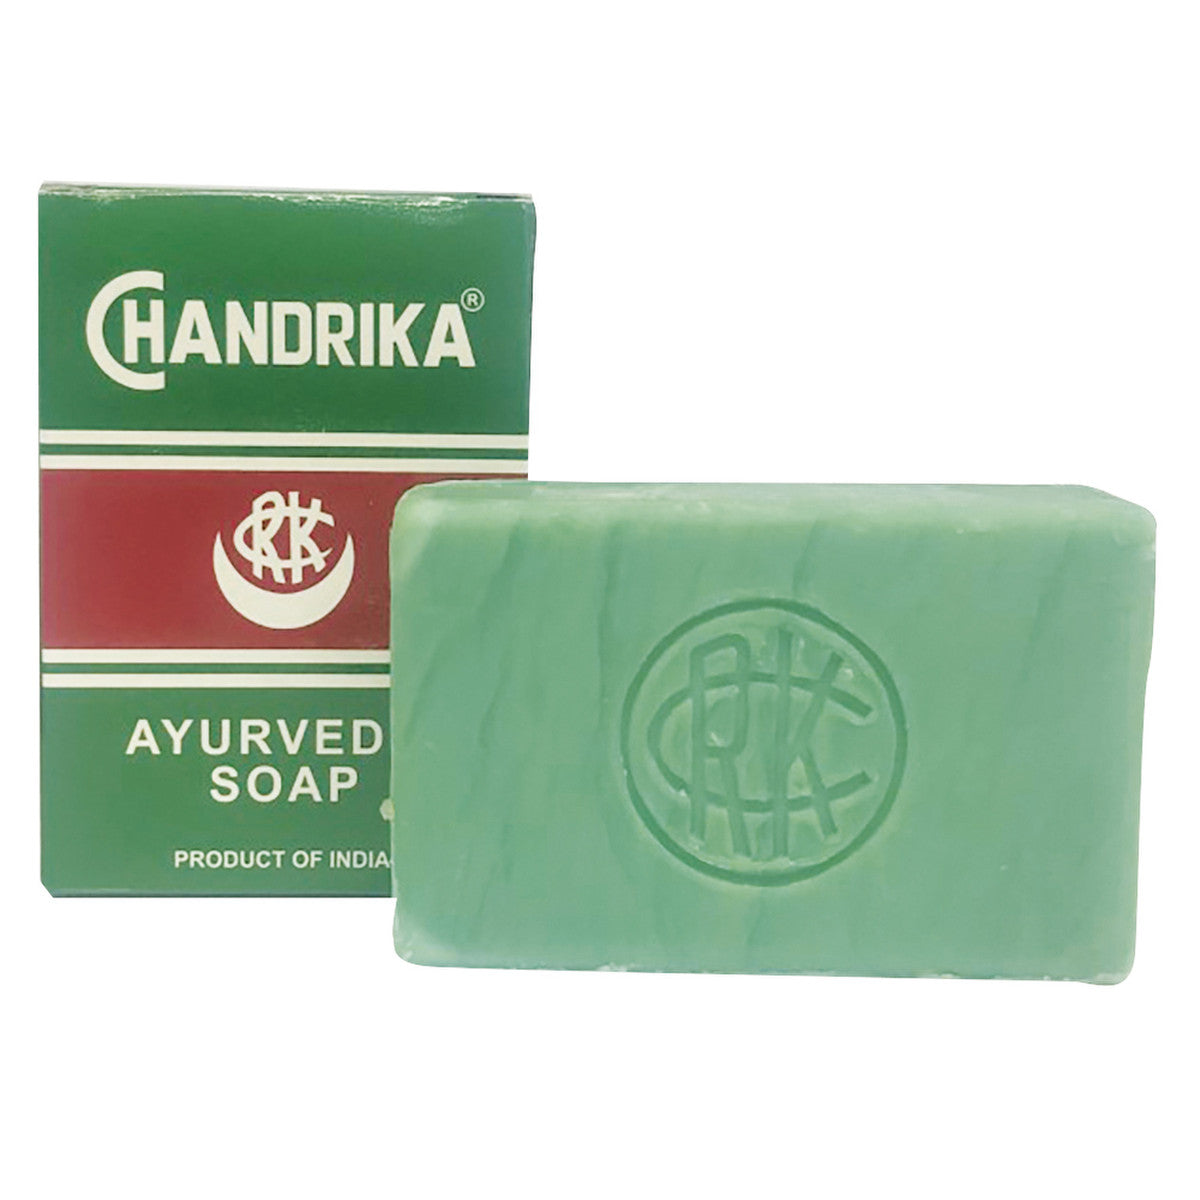 Chandrika - Ayurvedic Soap